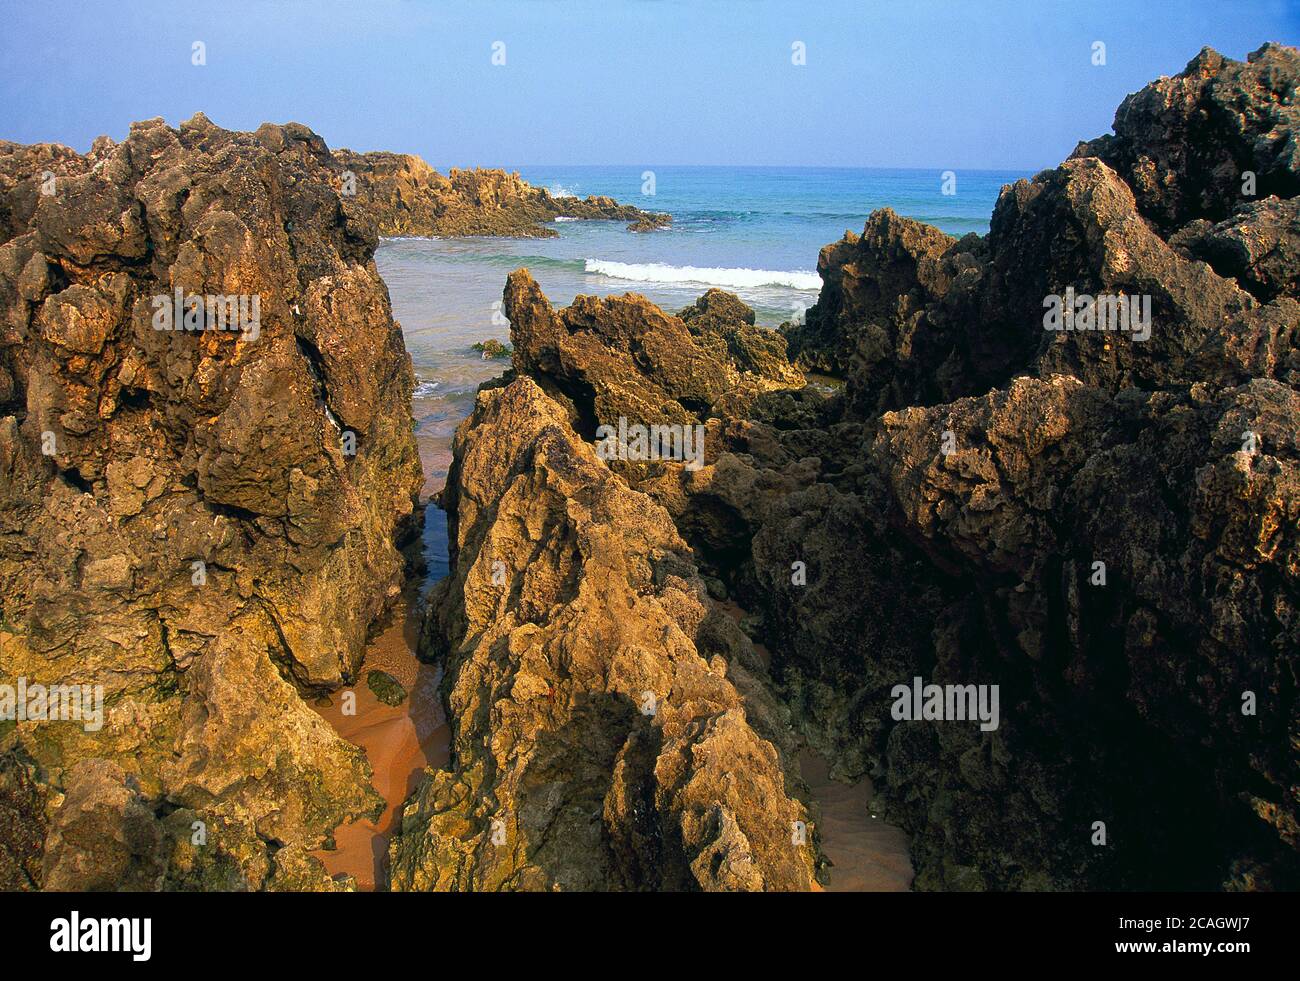 Rocks and beach. Dunas de Liencres Nature Reserve, Cantabria, Spain. Stock Photo